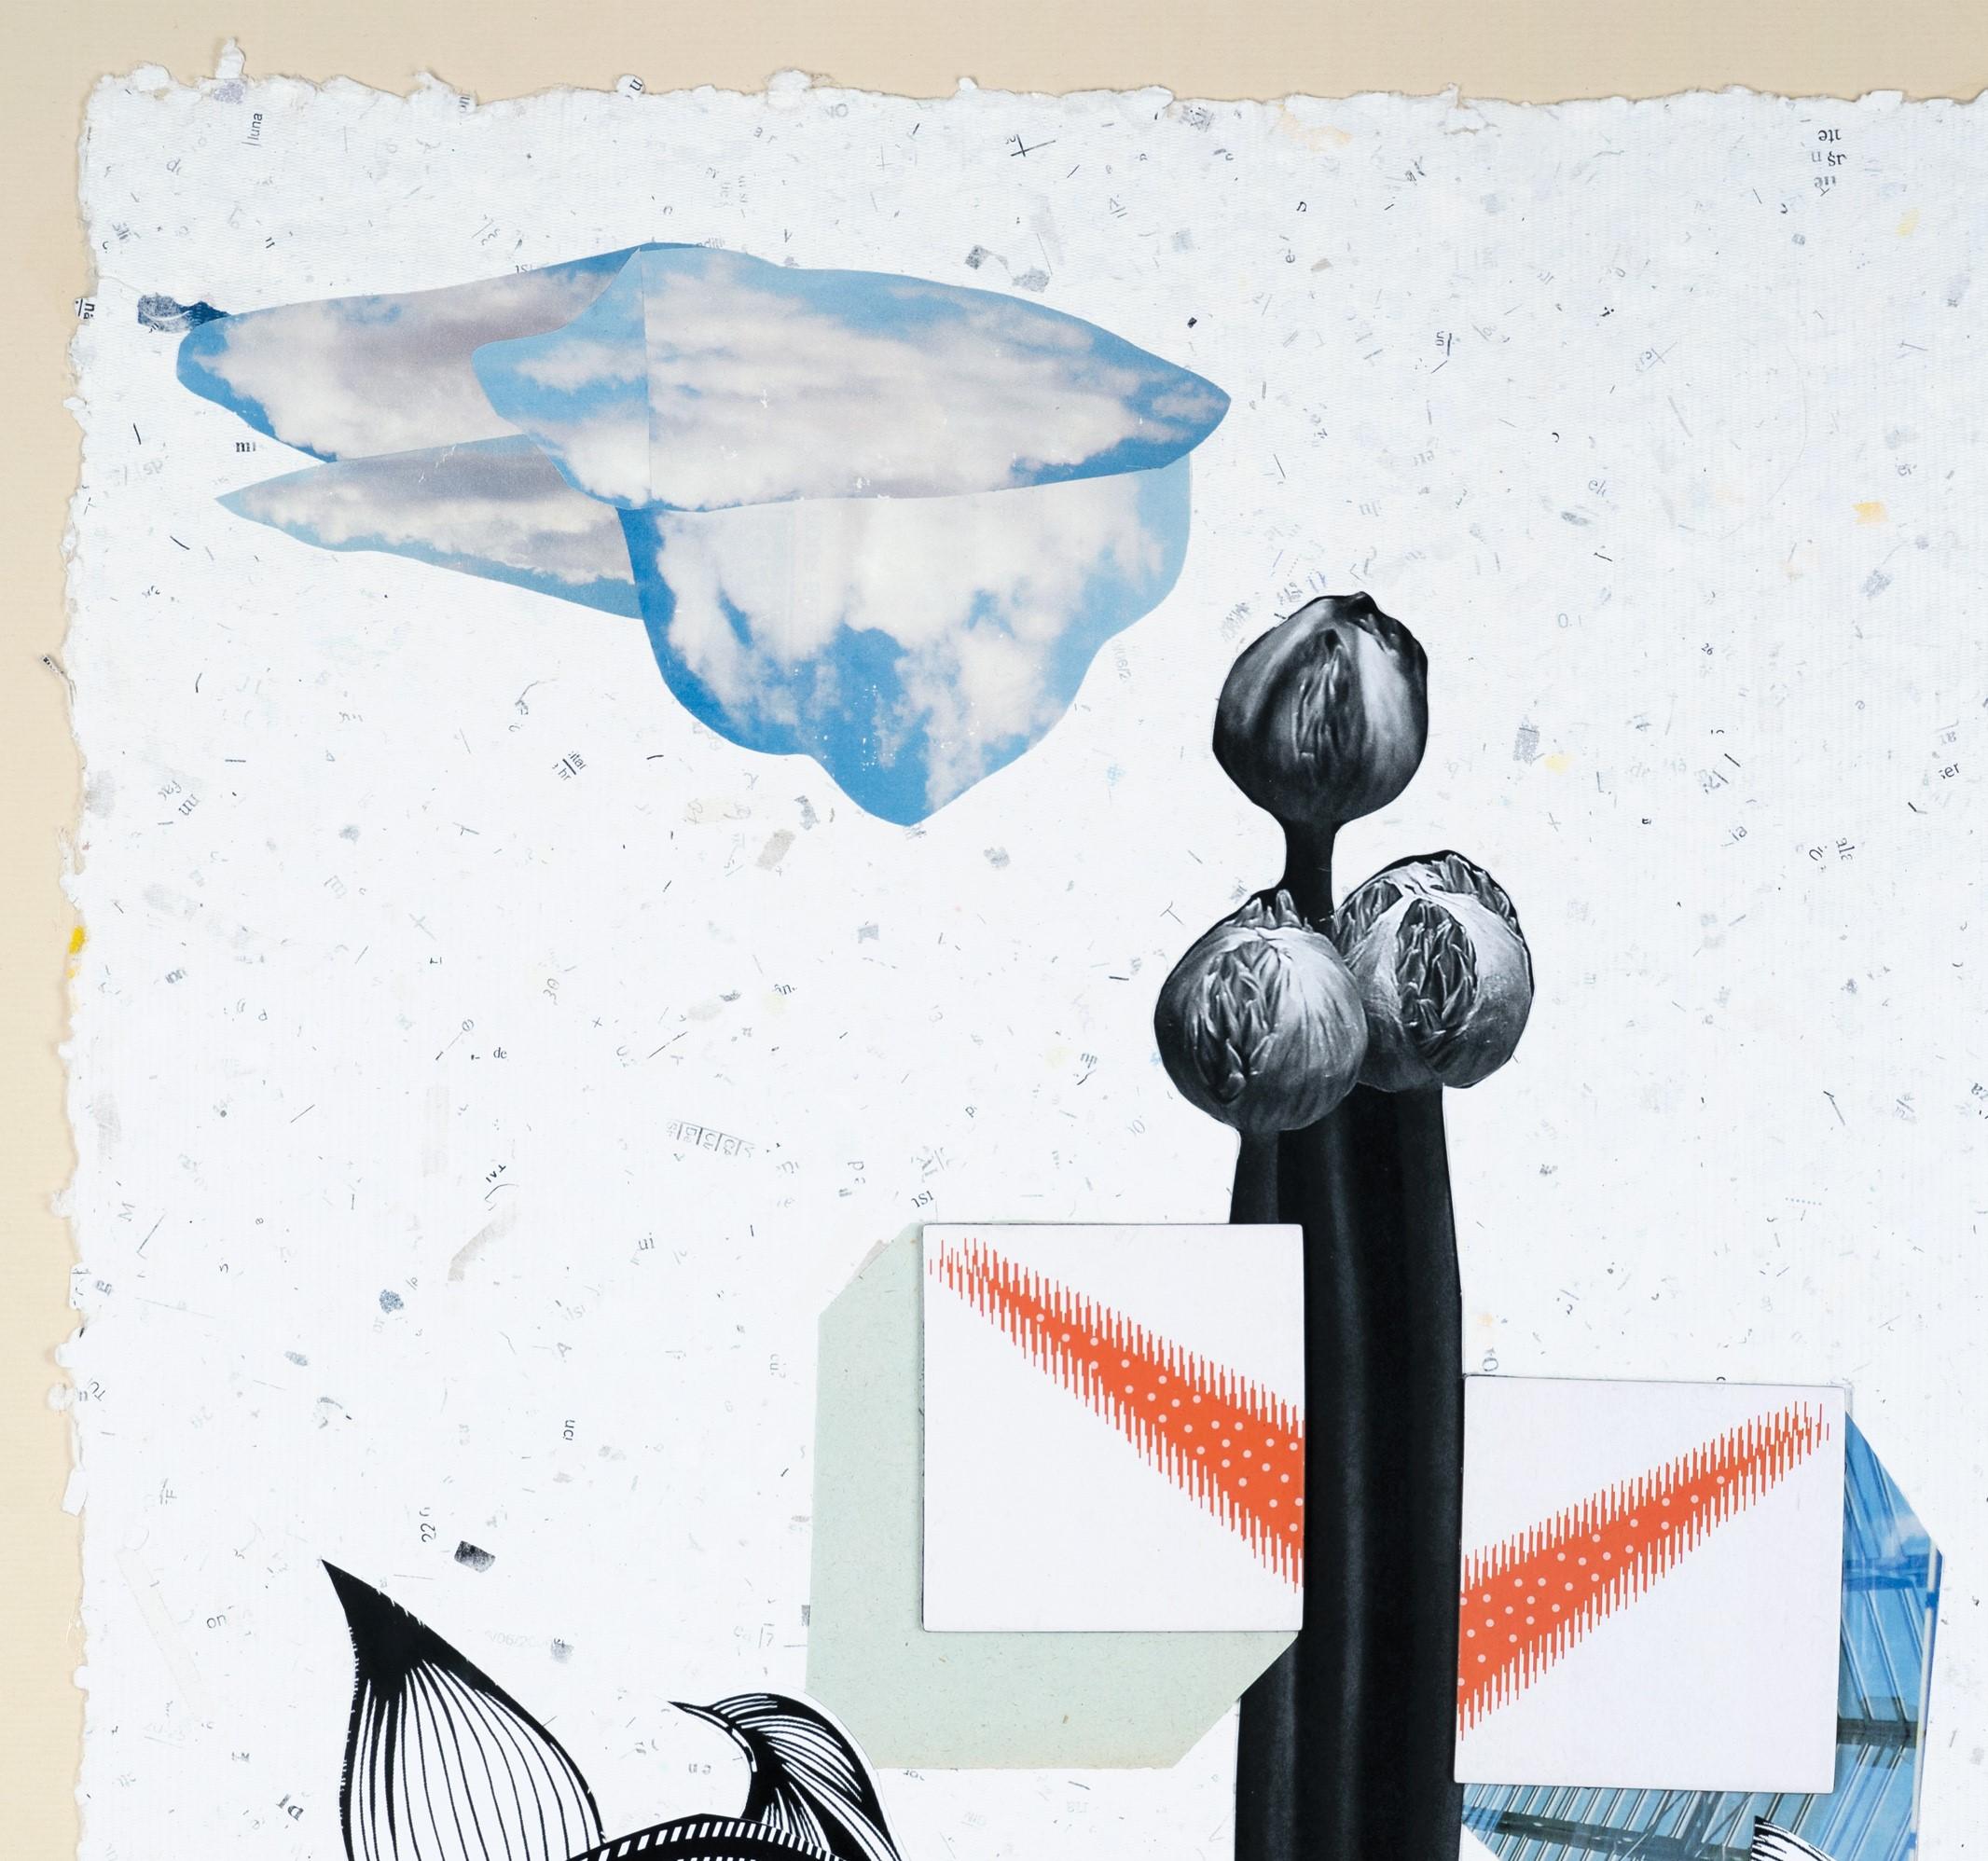 Die Blume – Papier, Landschaft, Collage, 21. Jahrhundert, Surrealismus (Zeitgenössisch), Mixed Media Art, von Raluca Arnăutu